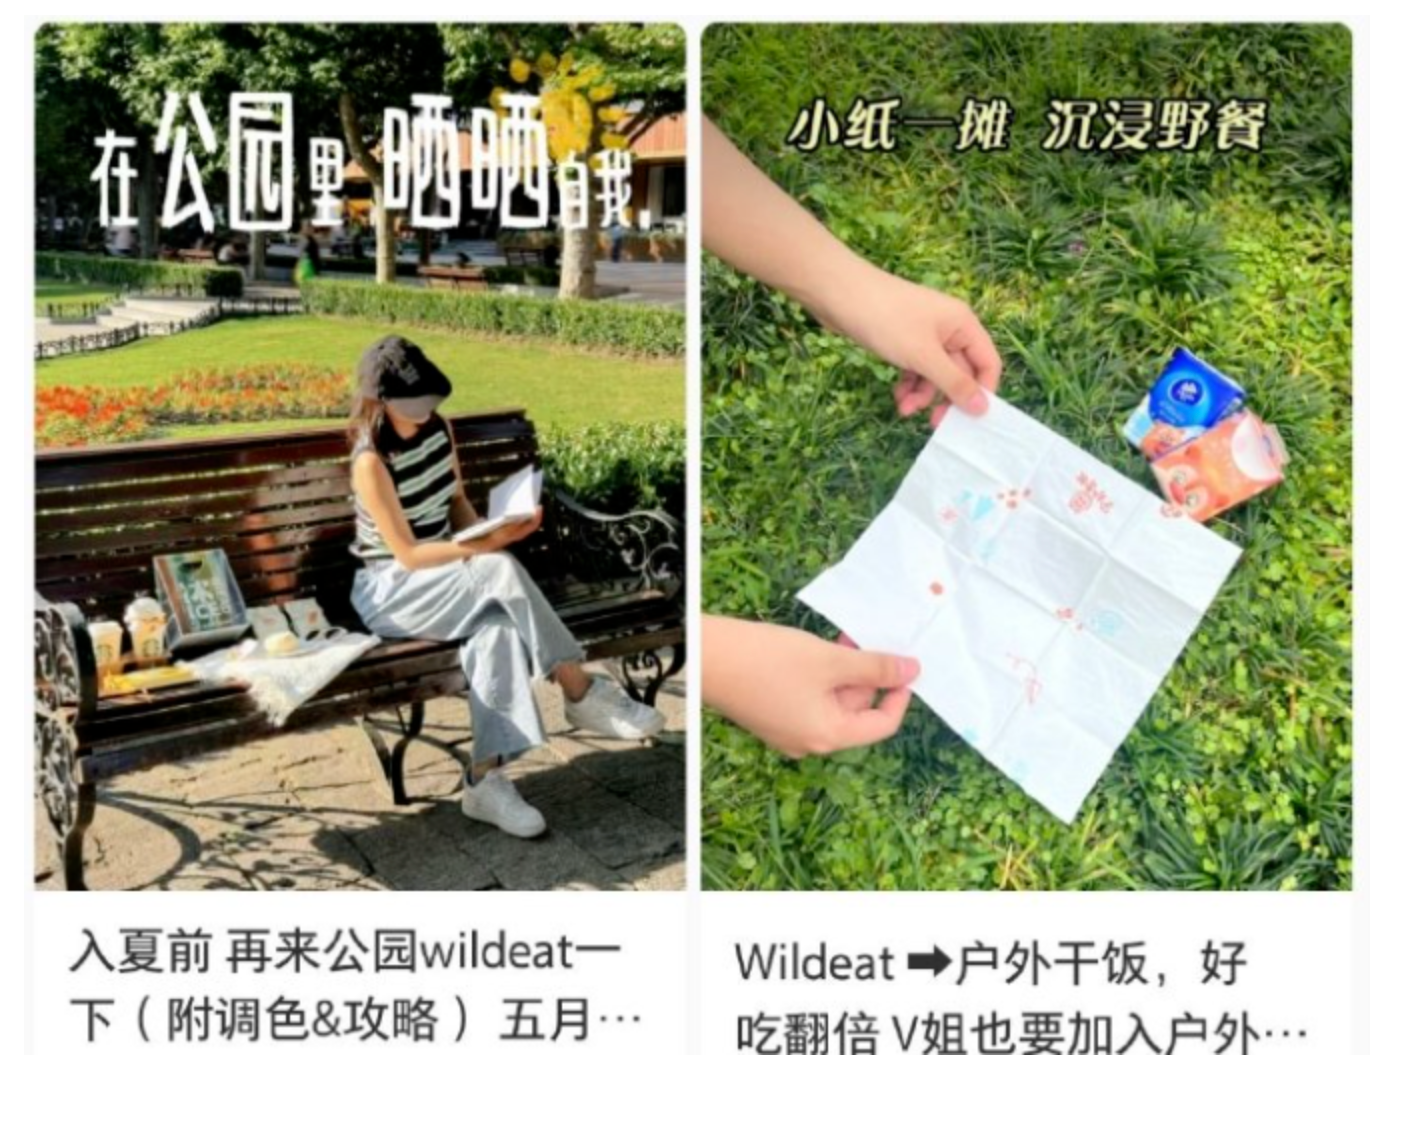 Young netizens share tips on how to wild-eat on Xiaohongshu. Image: Hujiang / Xiaohongshu.